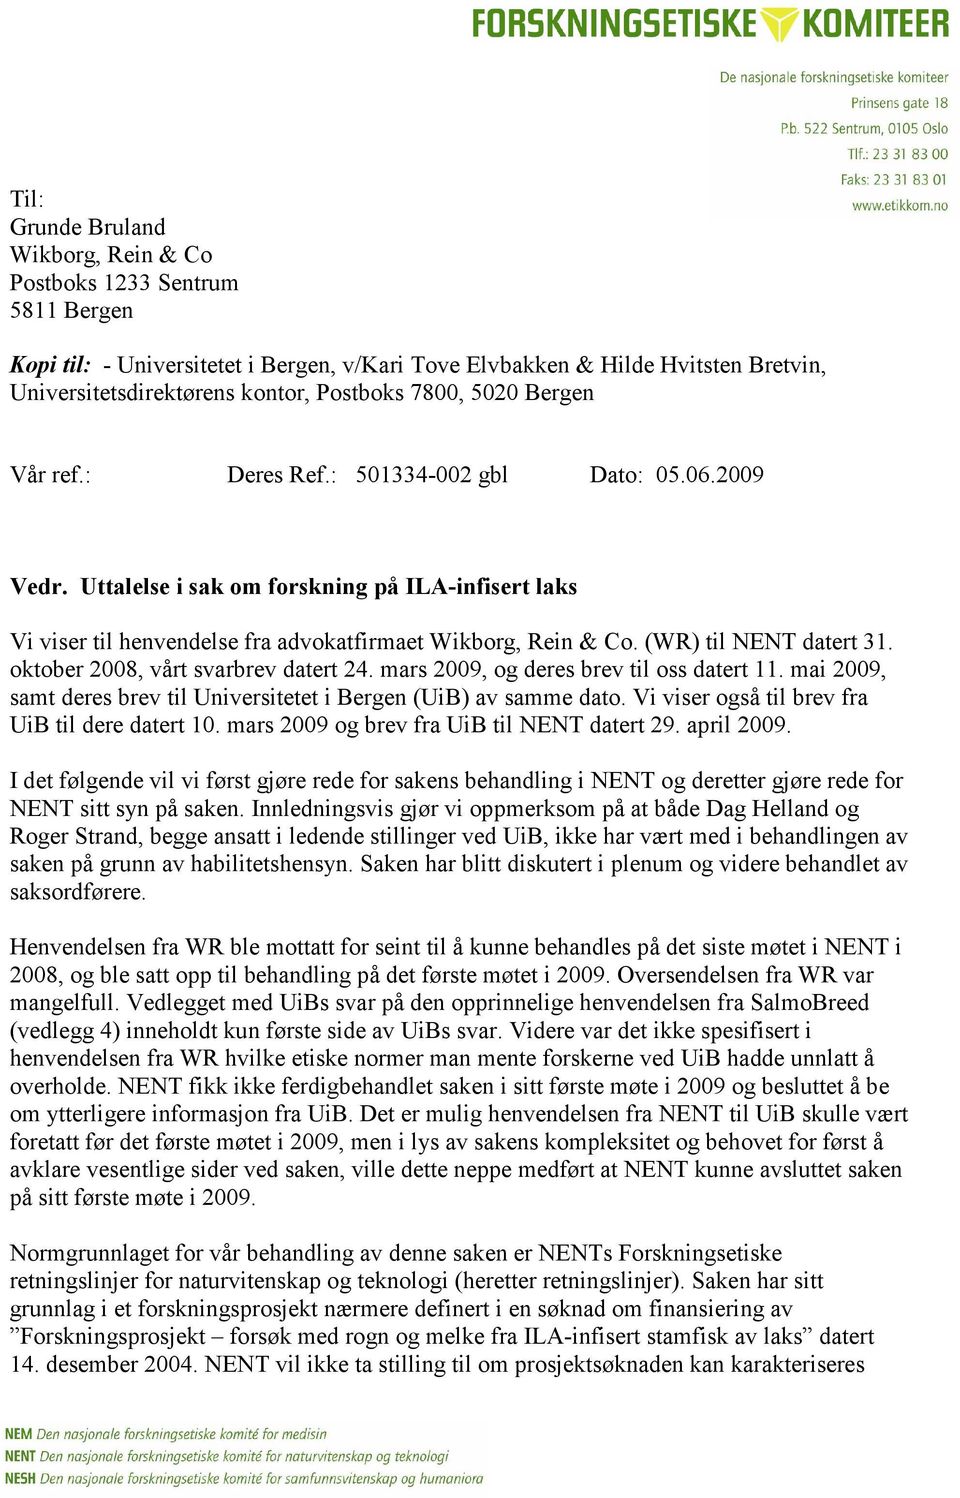 (WR) til NENT datert 31. oktober 2008, vårt svarbrev datert 24. mars 2009, og deres brev til oss datert 11. mai 2009, samt deres brev til Universitetet i Bergen (UiB) av samme dato.